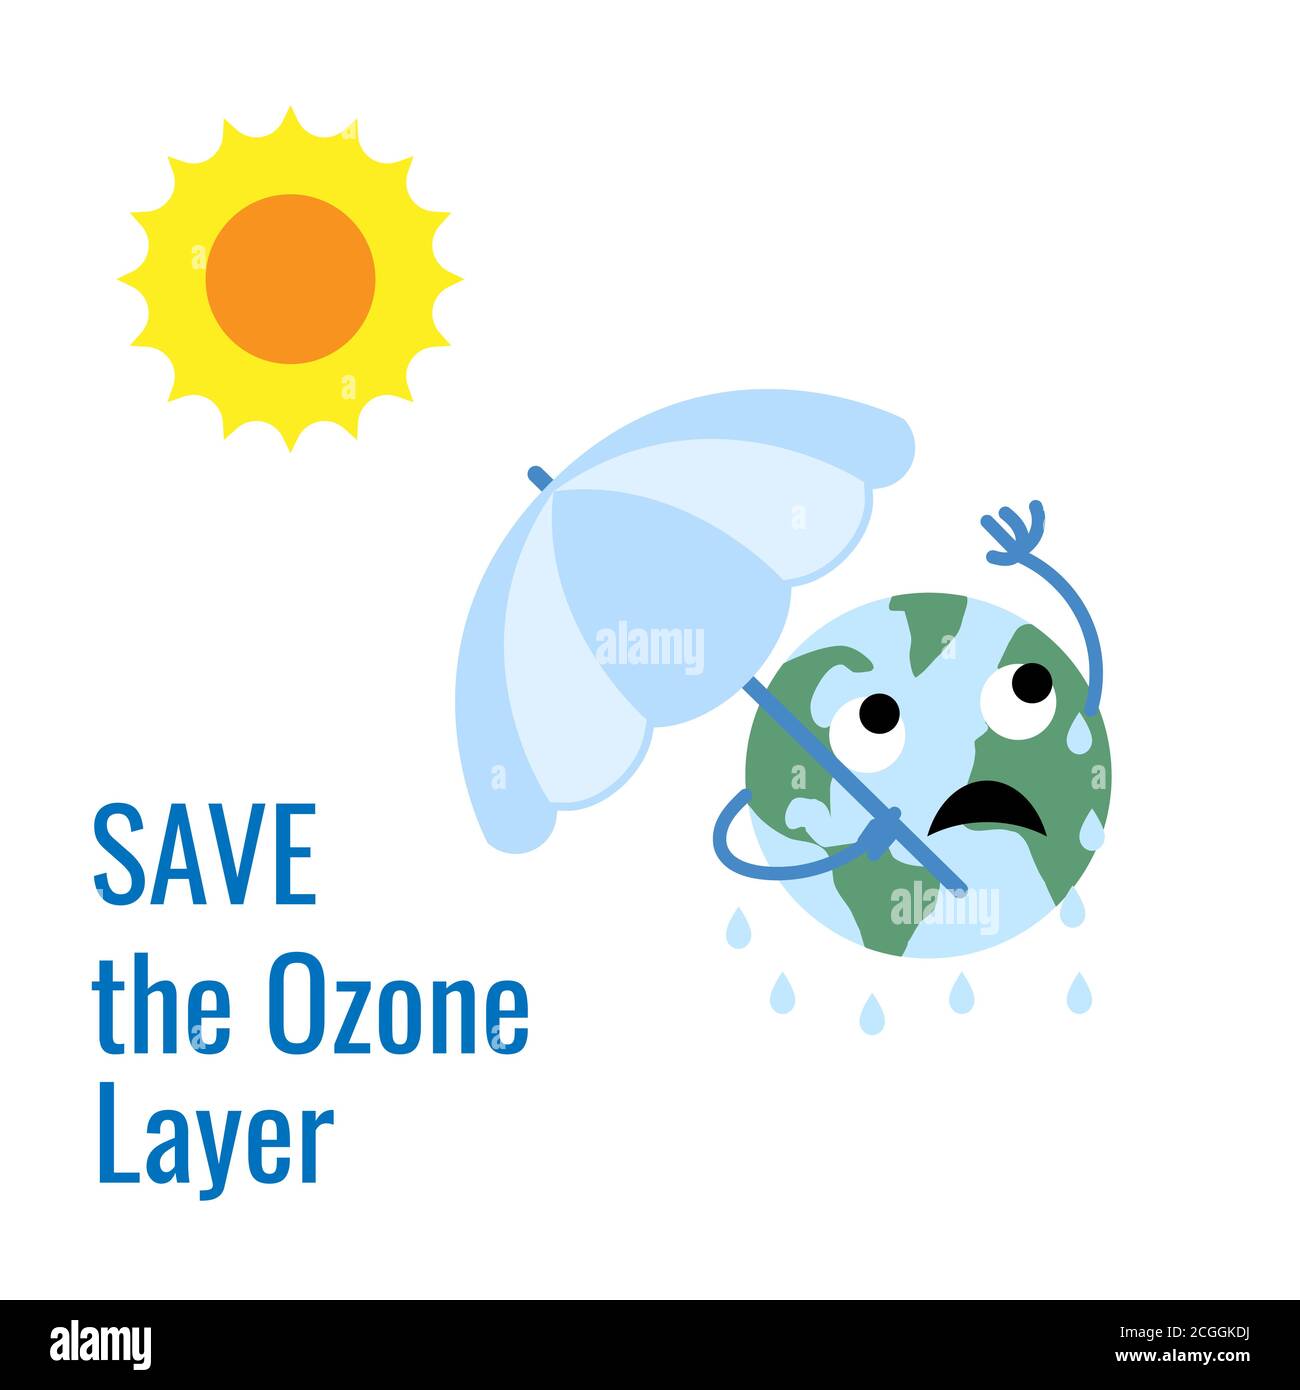 Design for International Day for the Preservation of the Ozone Layer . giornata mondiale dell'ozono. 16 settembre Illustrazione Vettoriale